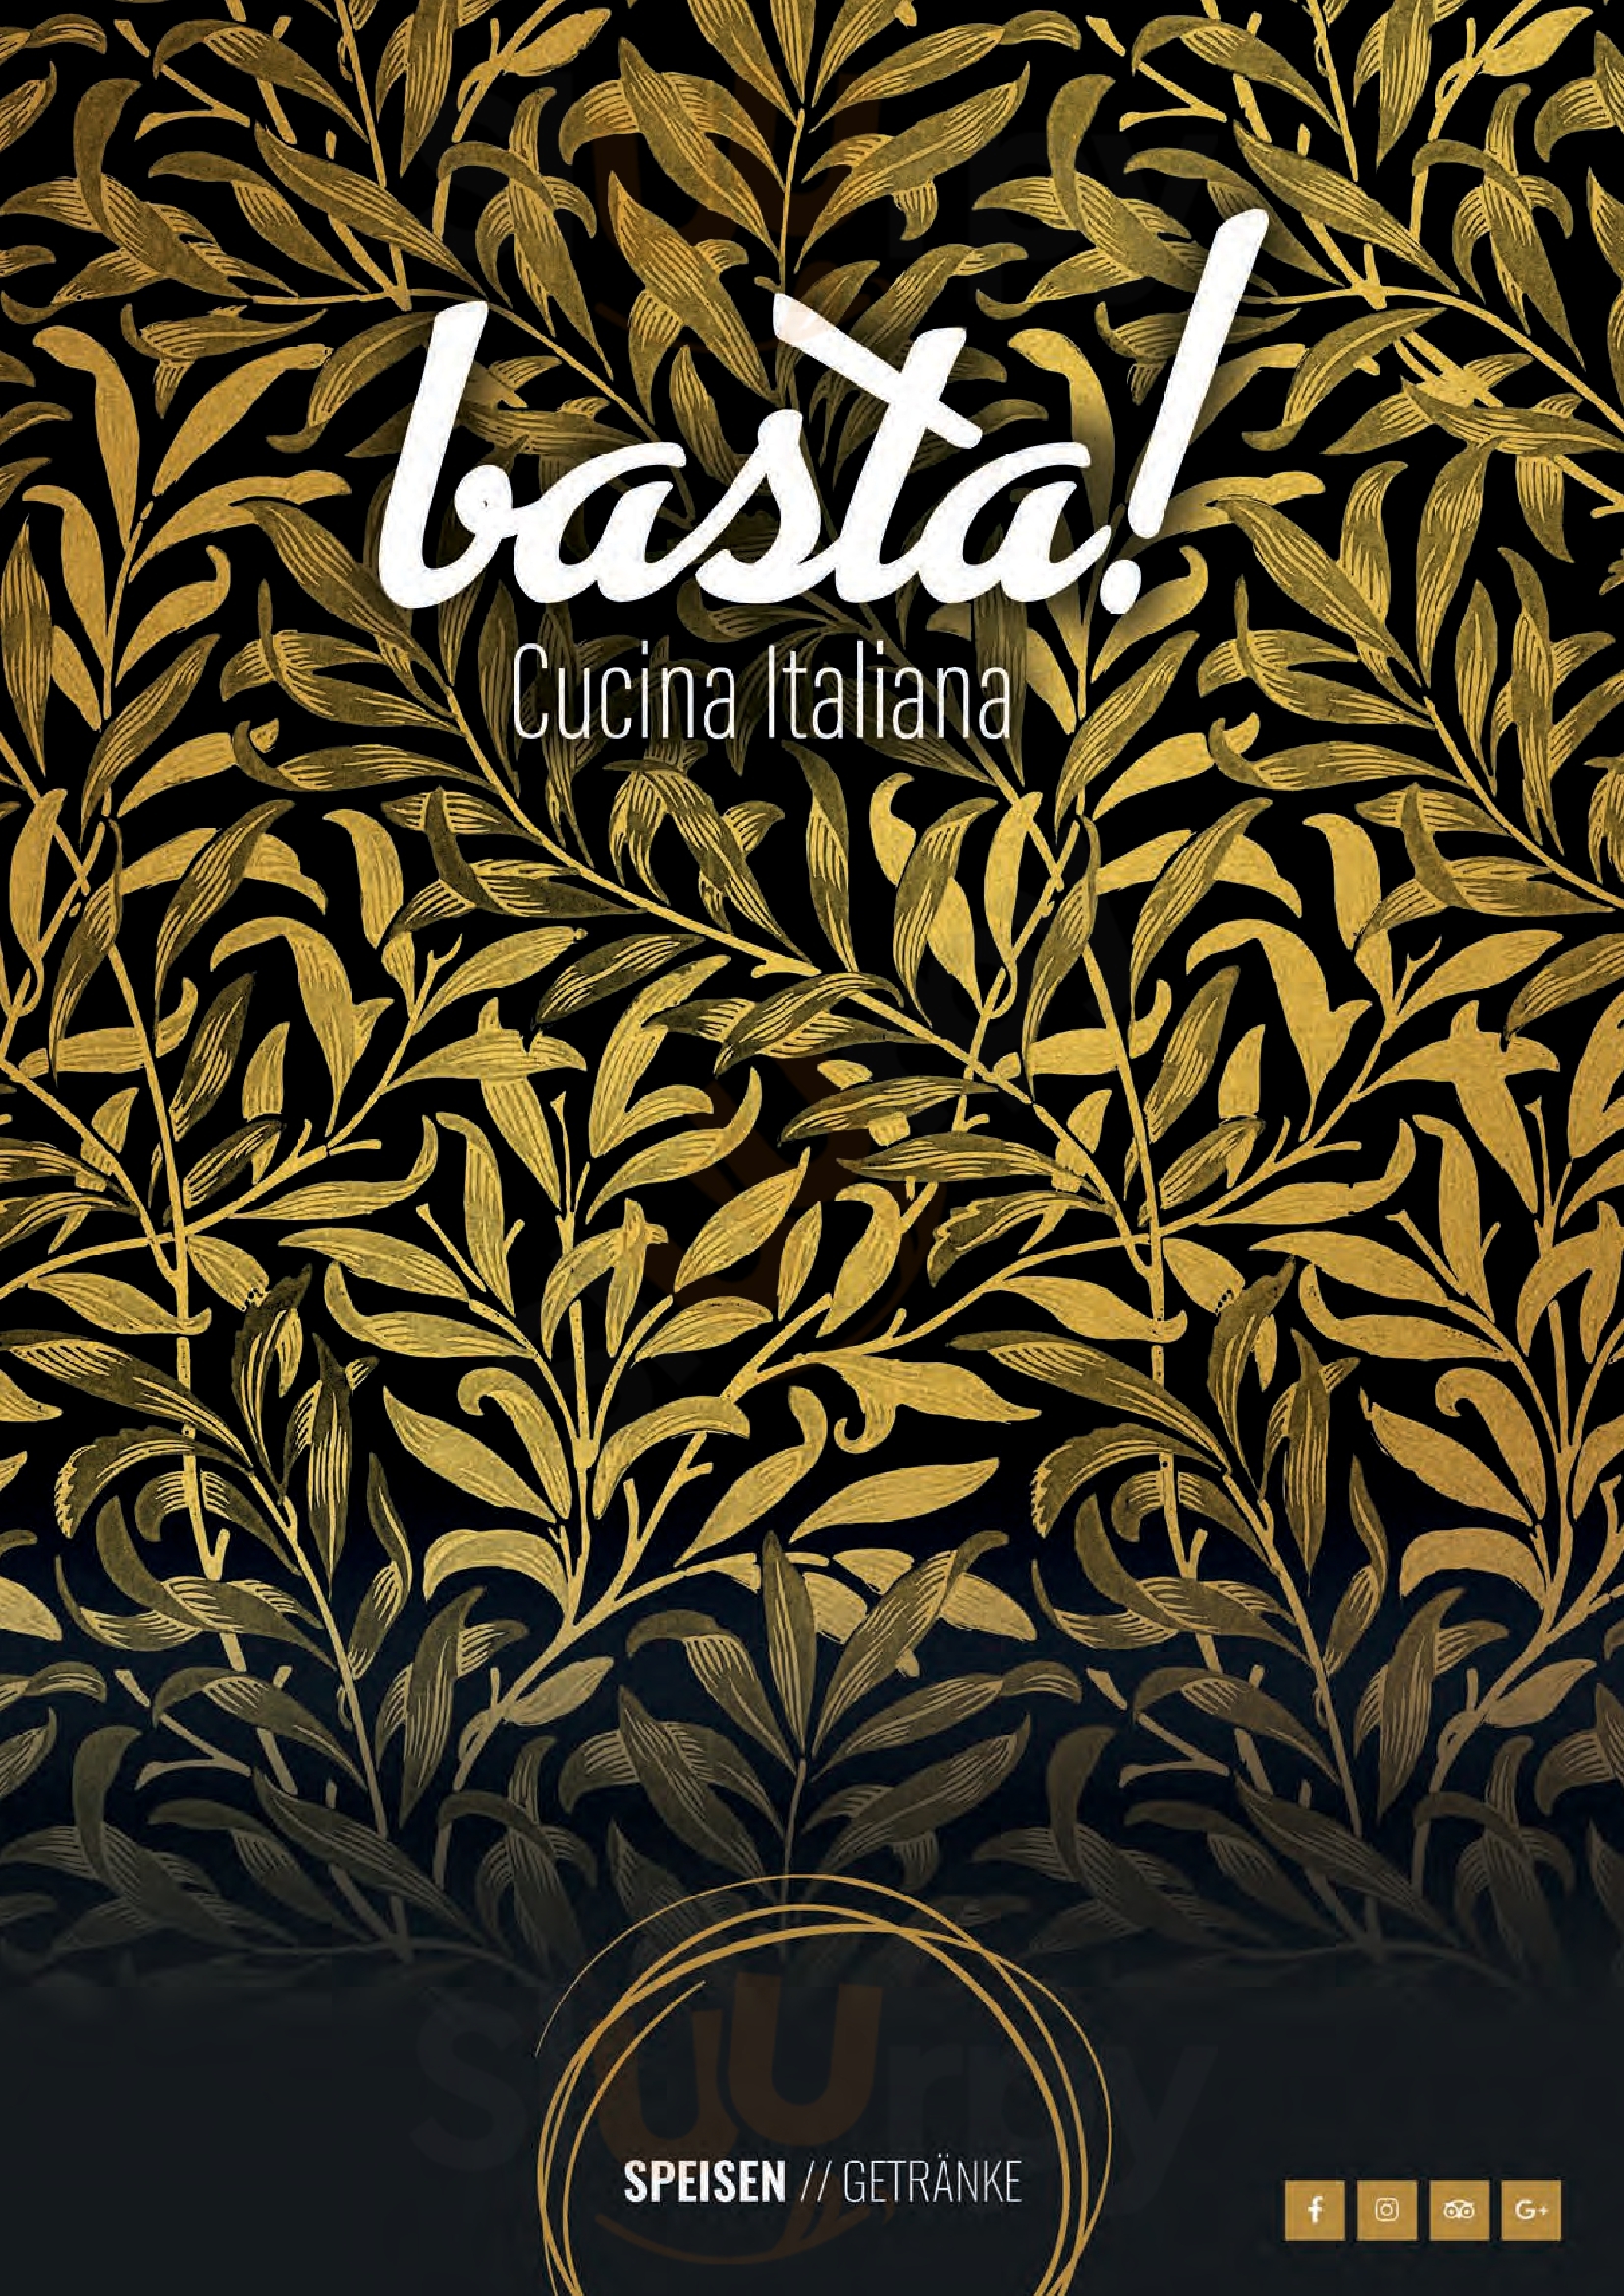 Basta! Cucina Italiana Traun Menu - 1